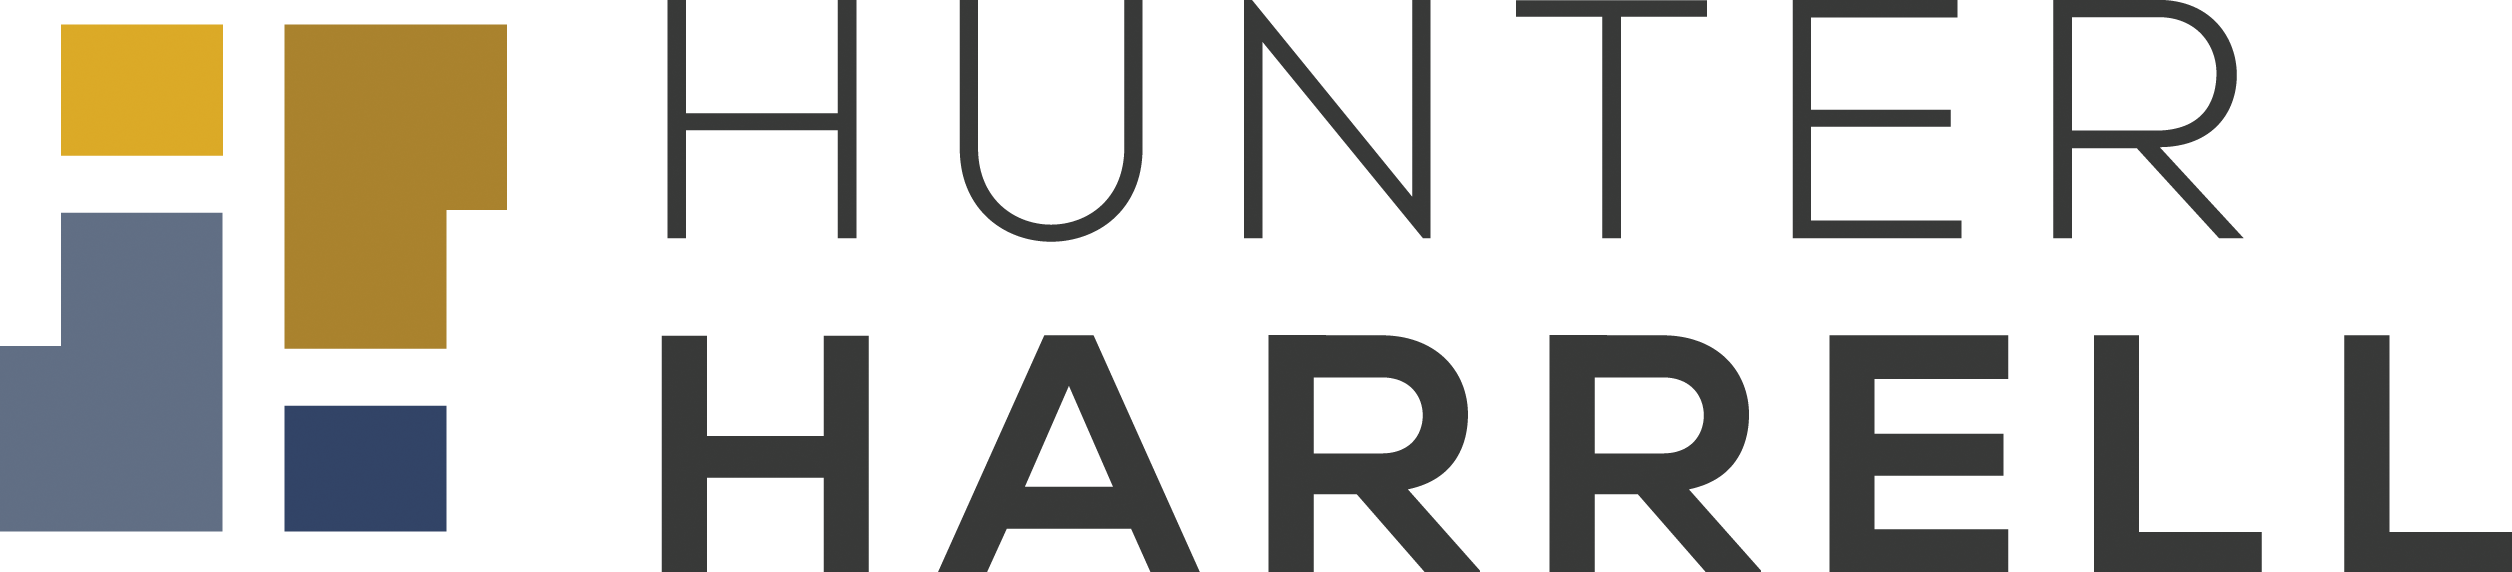 Hunter Harrell Logo